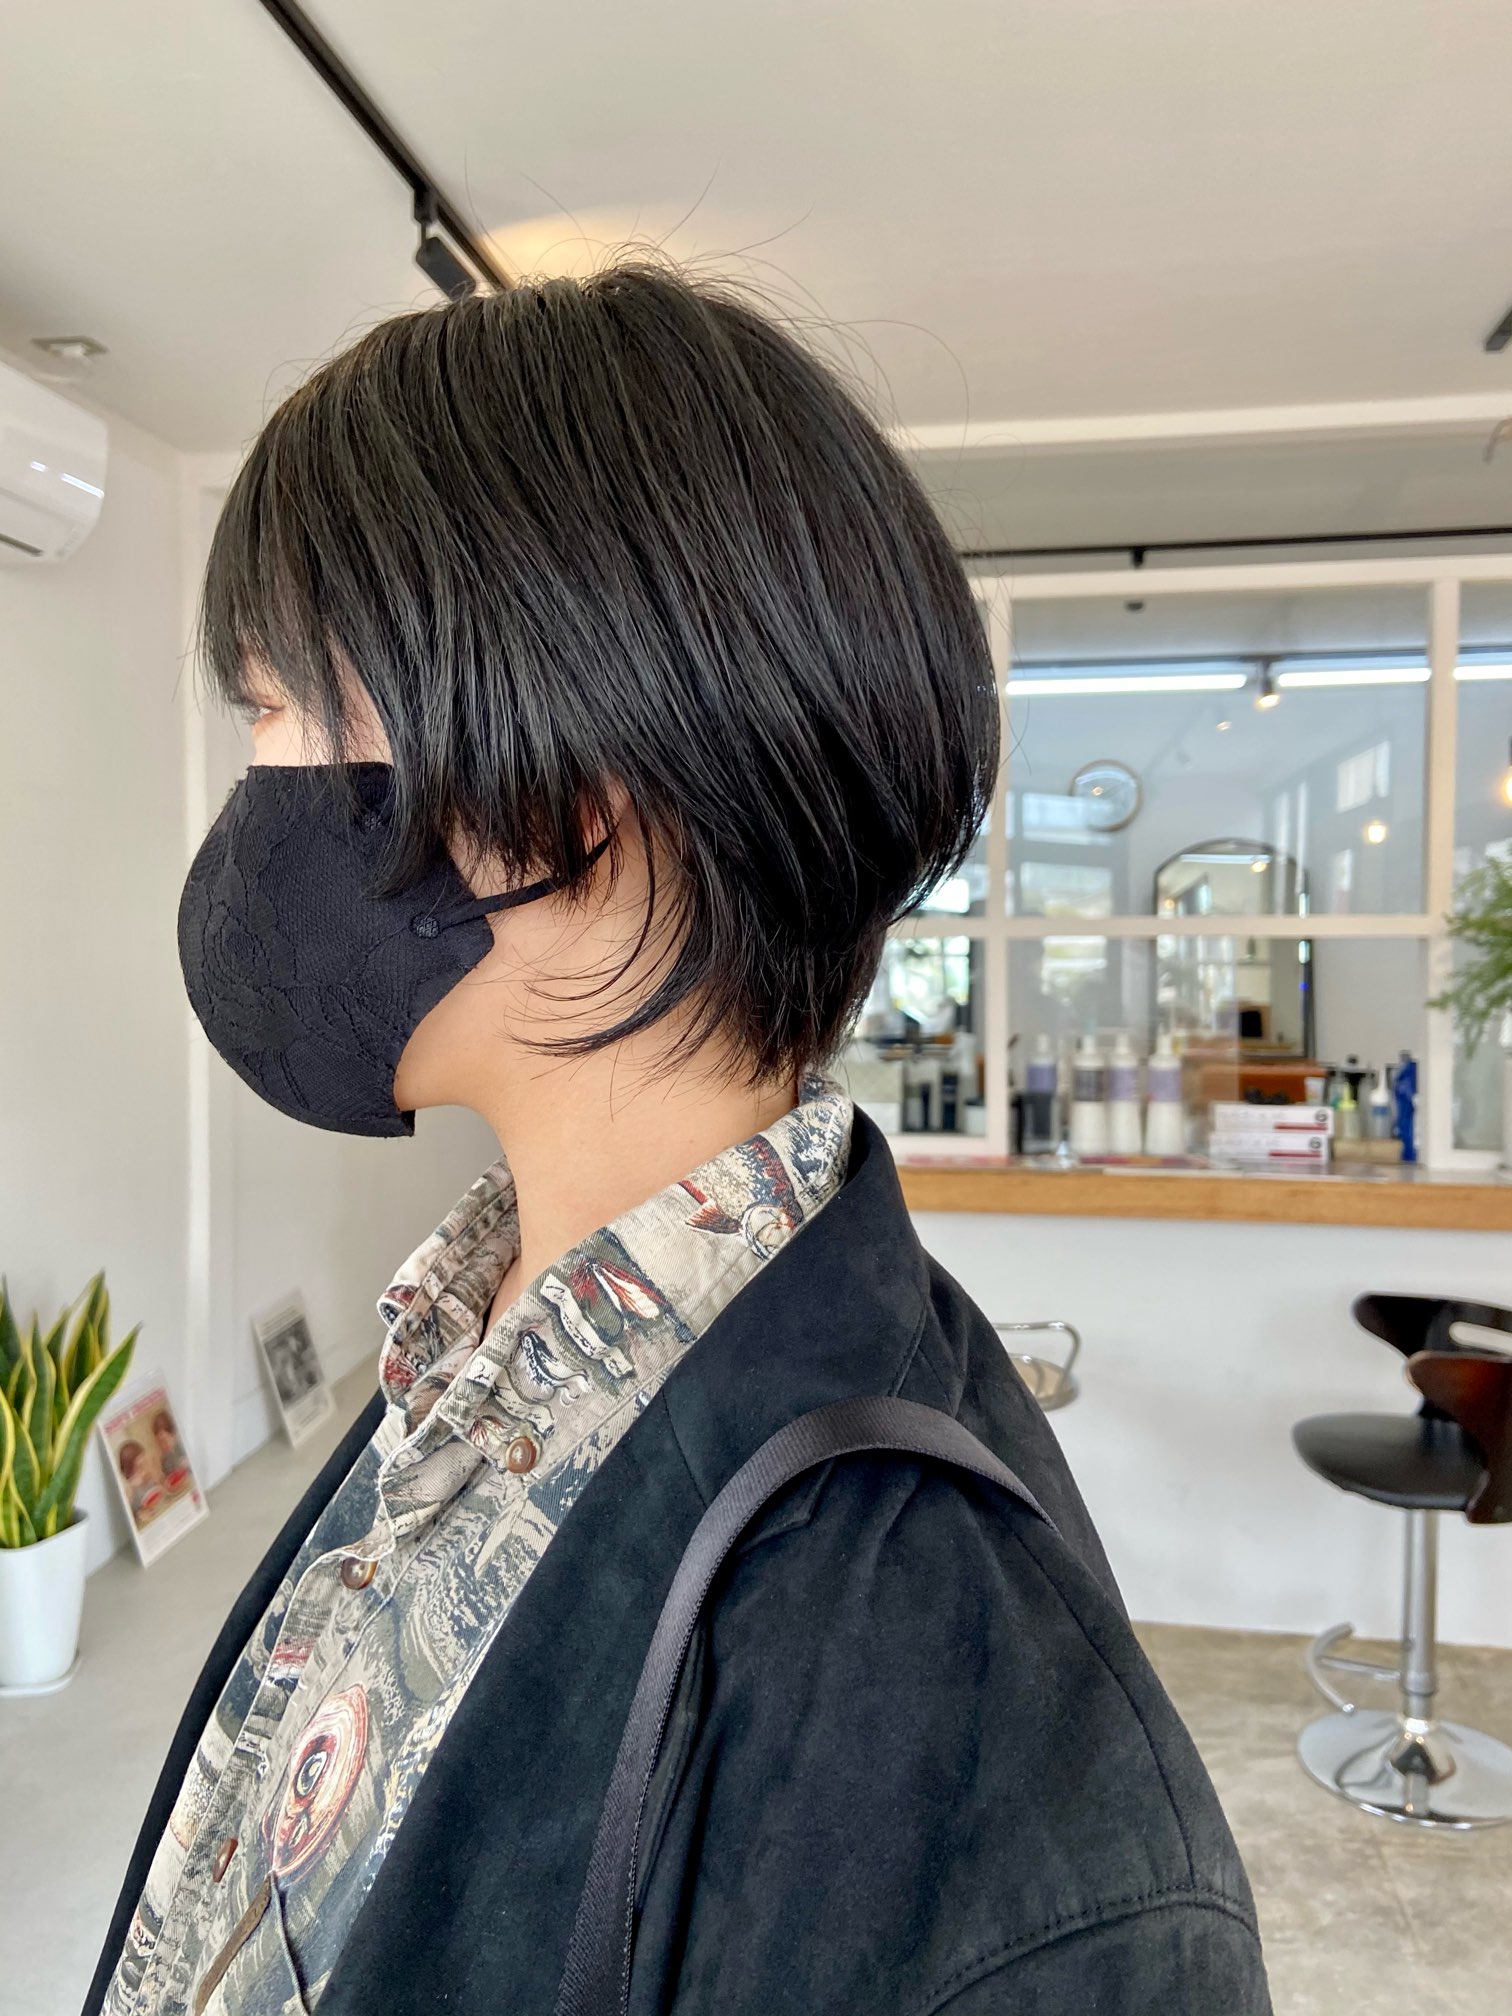 ショートヘアからウルフに伸ばしていく予定のヘアスタイル 南大分の美容室tii 原田タカヒロのブログ